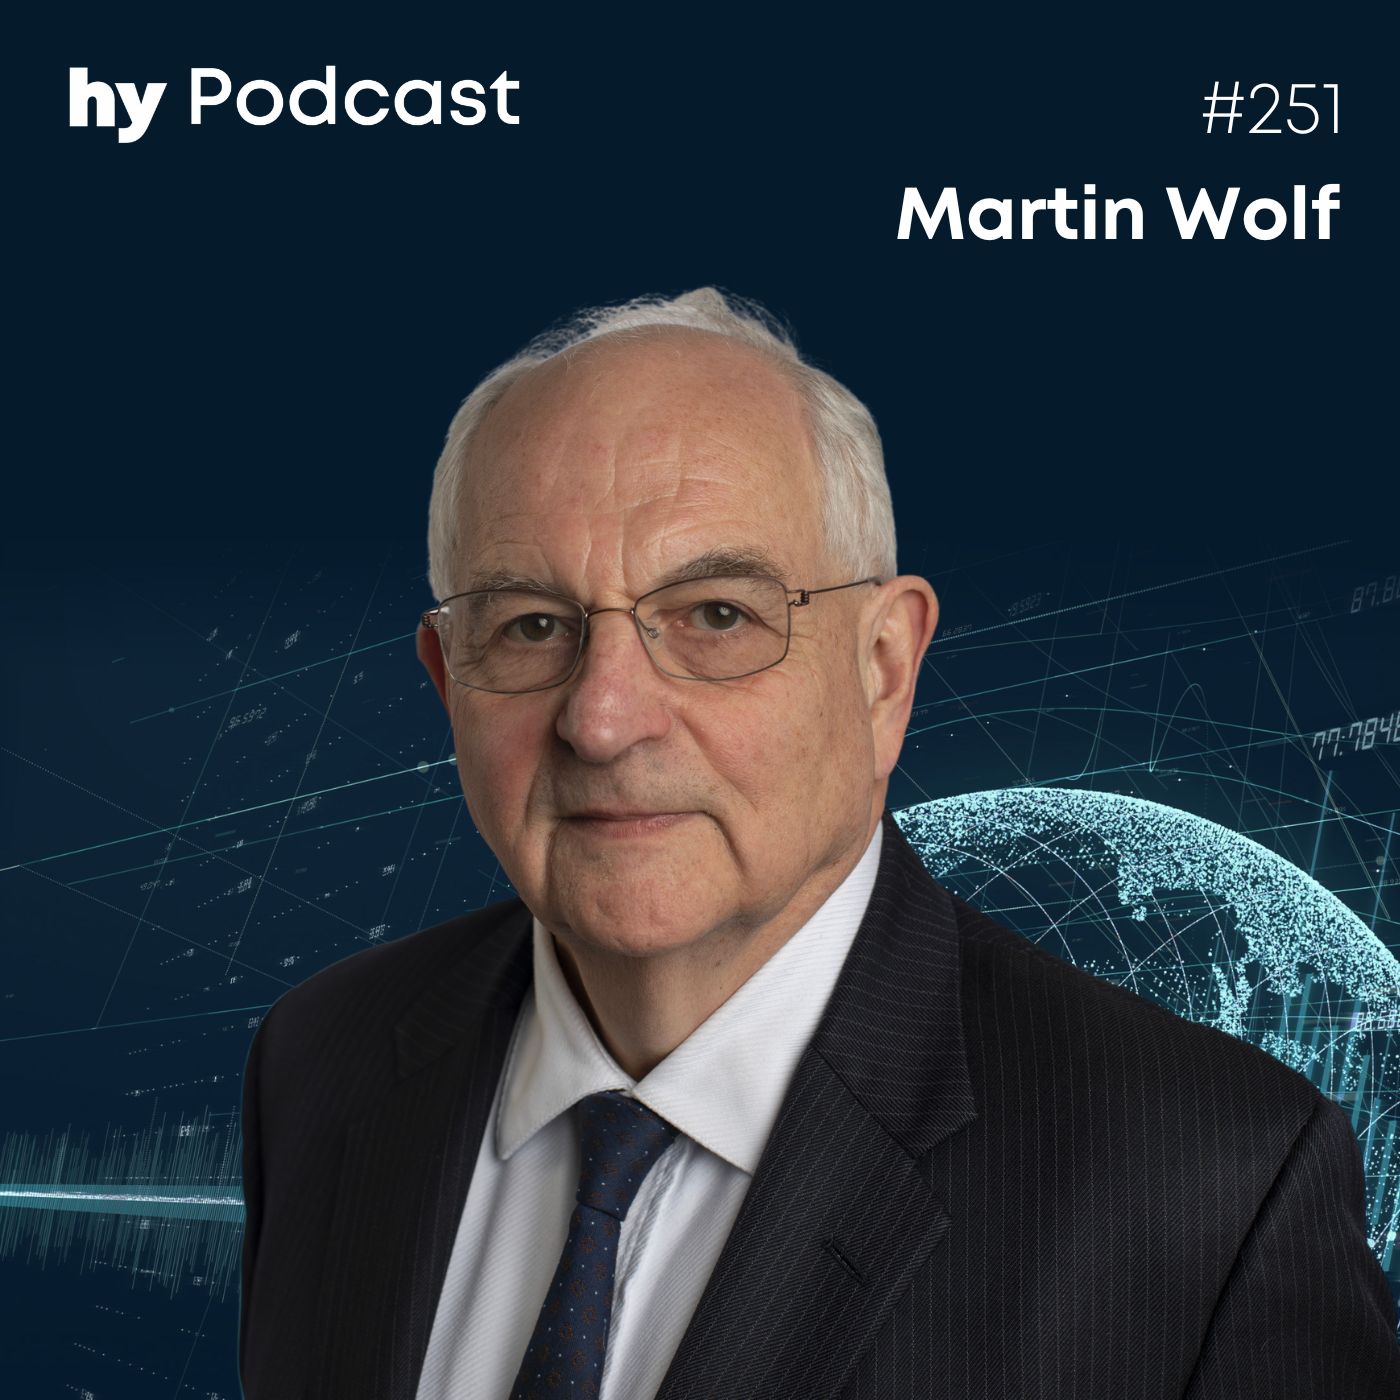 Folge 251 mit Martin Wolf: Die Krise des demokratischen Kapitalismus